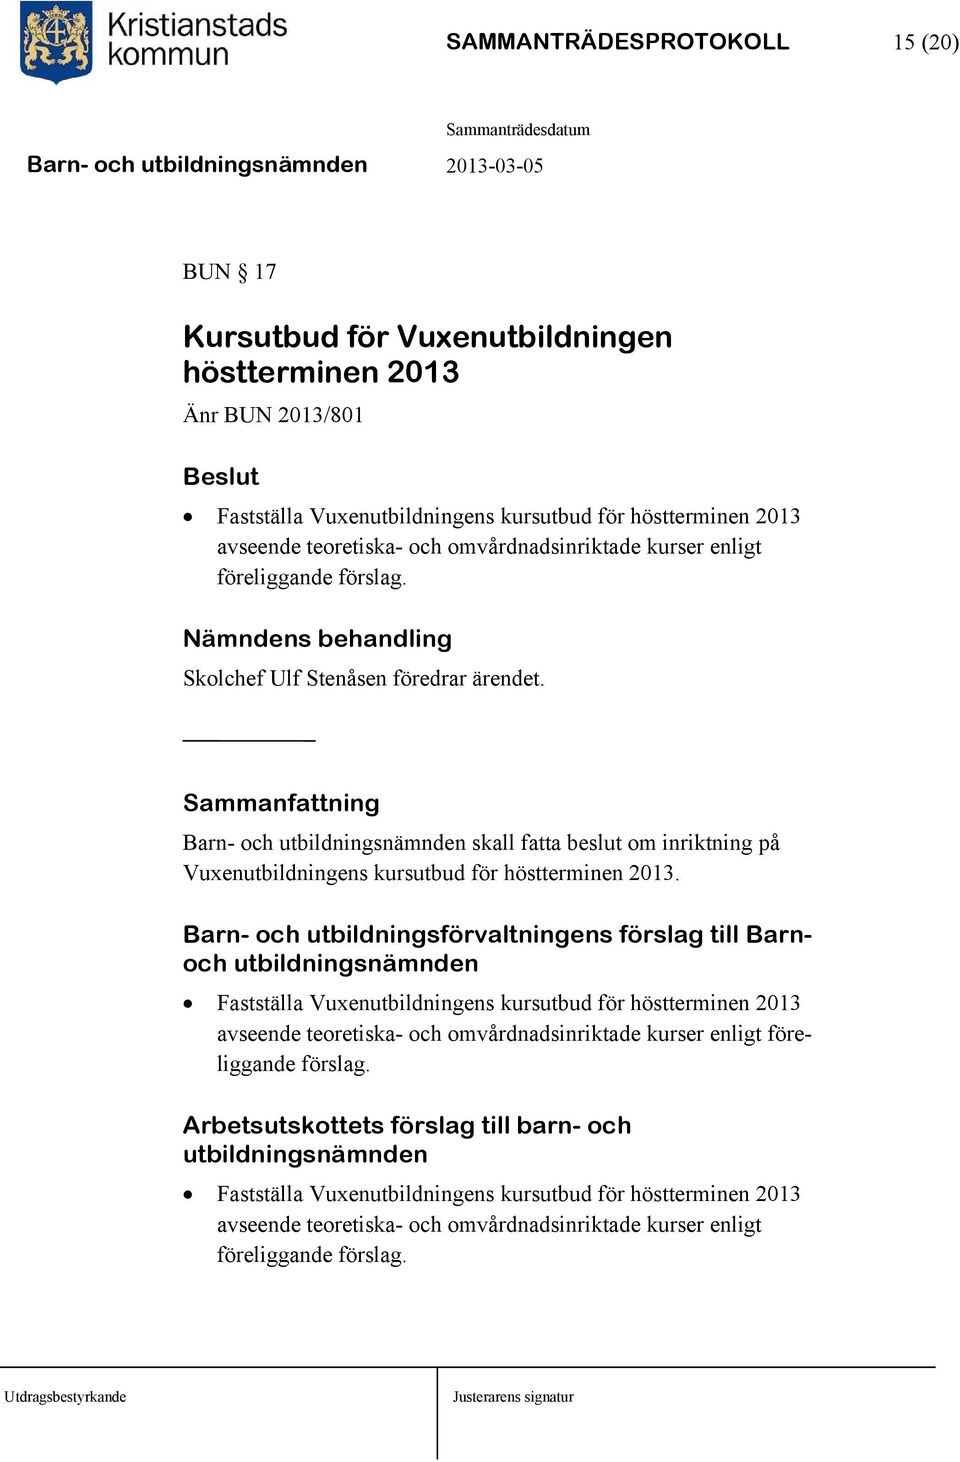 Sammanfattning Barn- och skall fatta beslut om inriktning på Vuxenutbildningens kursutbud för höstterminen 2013.